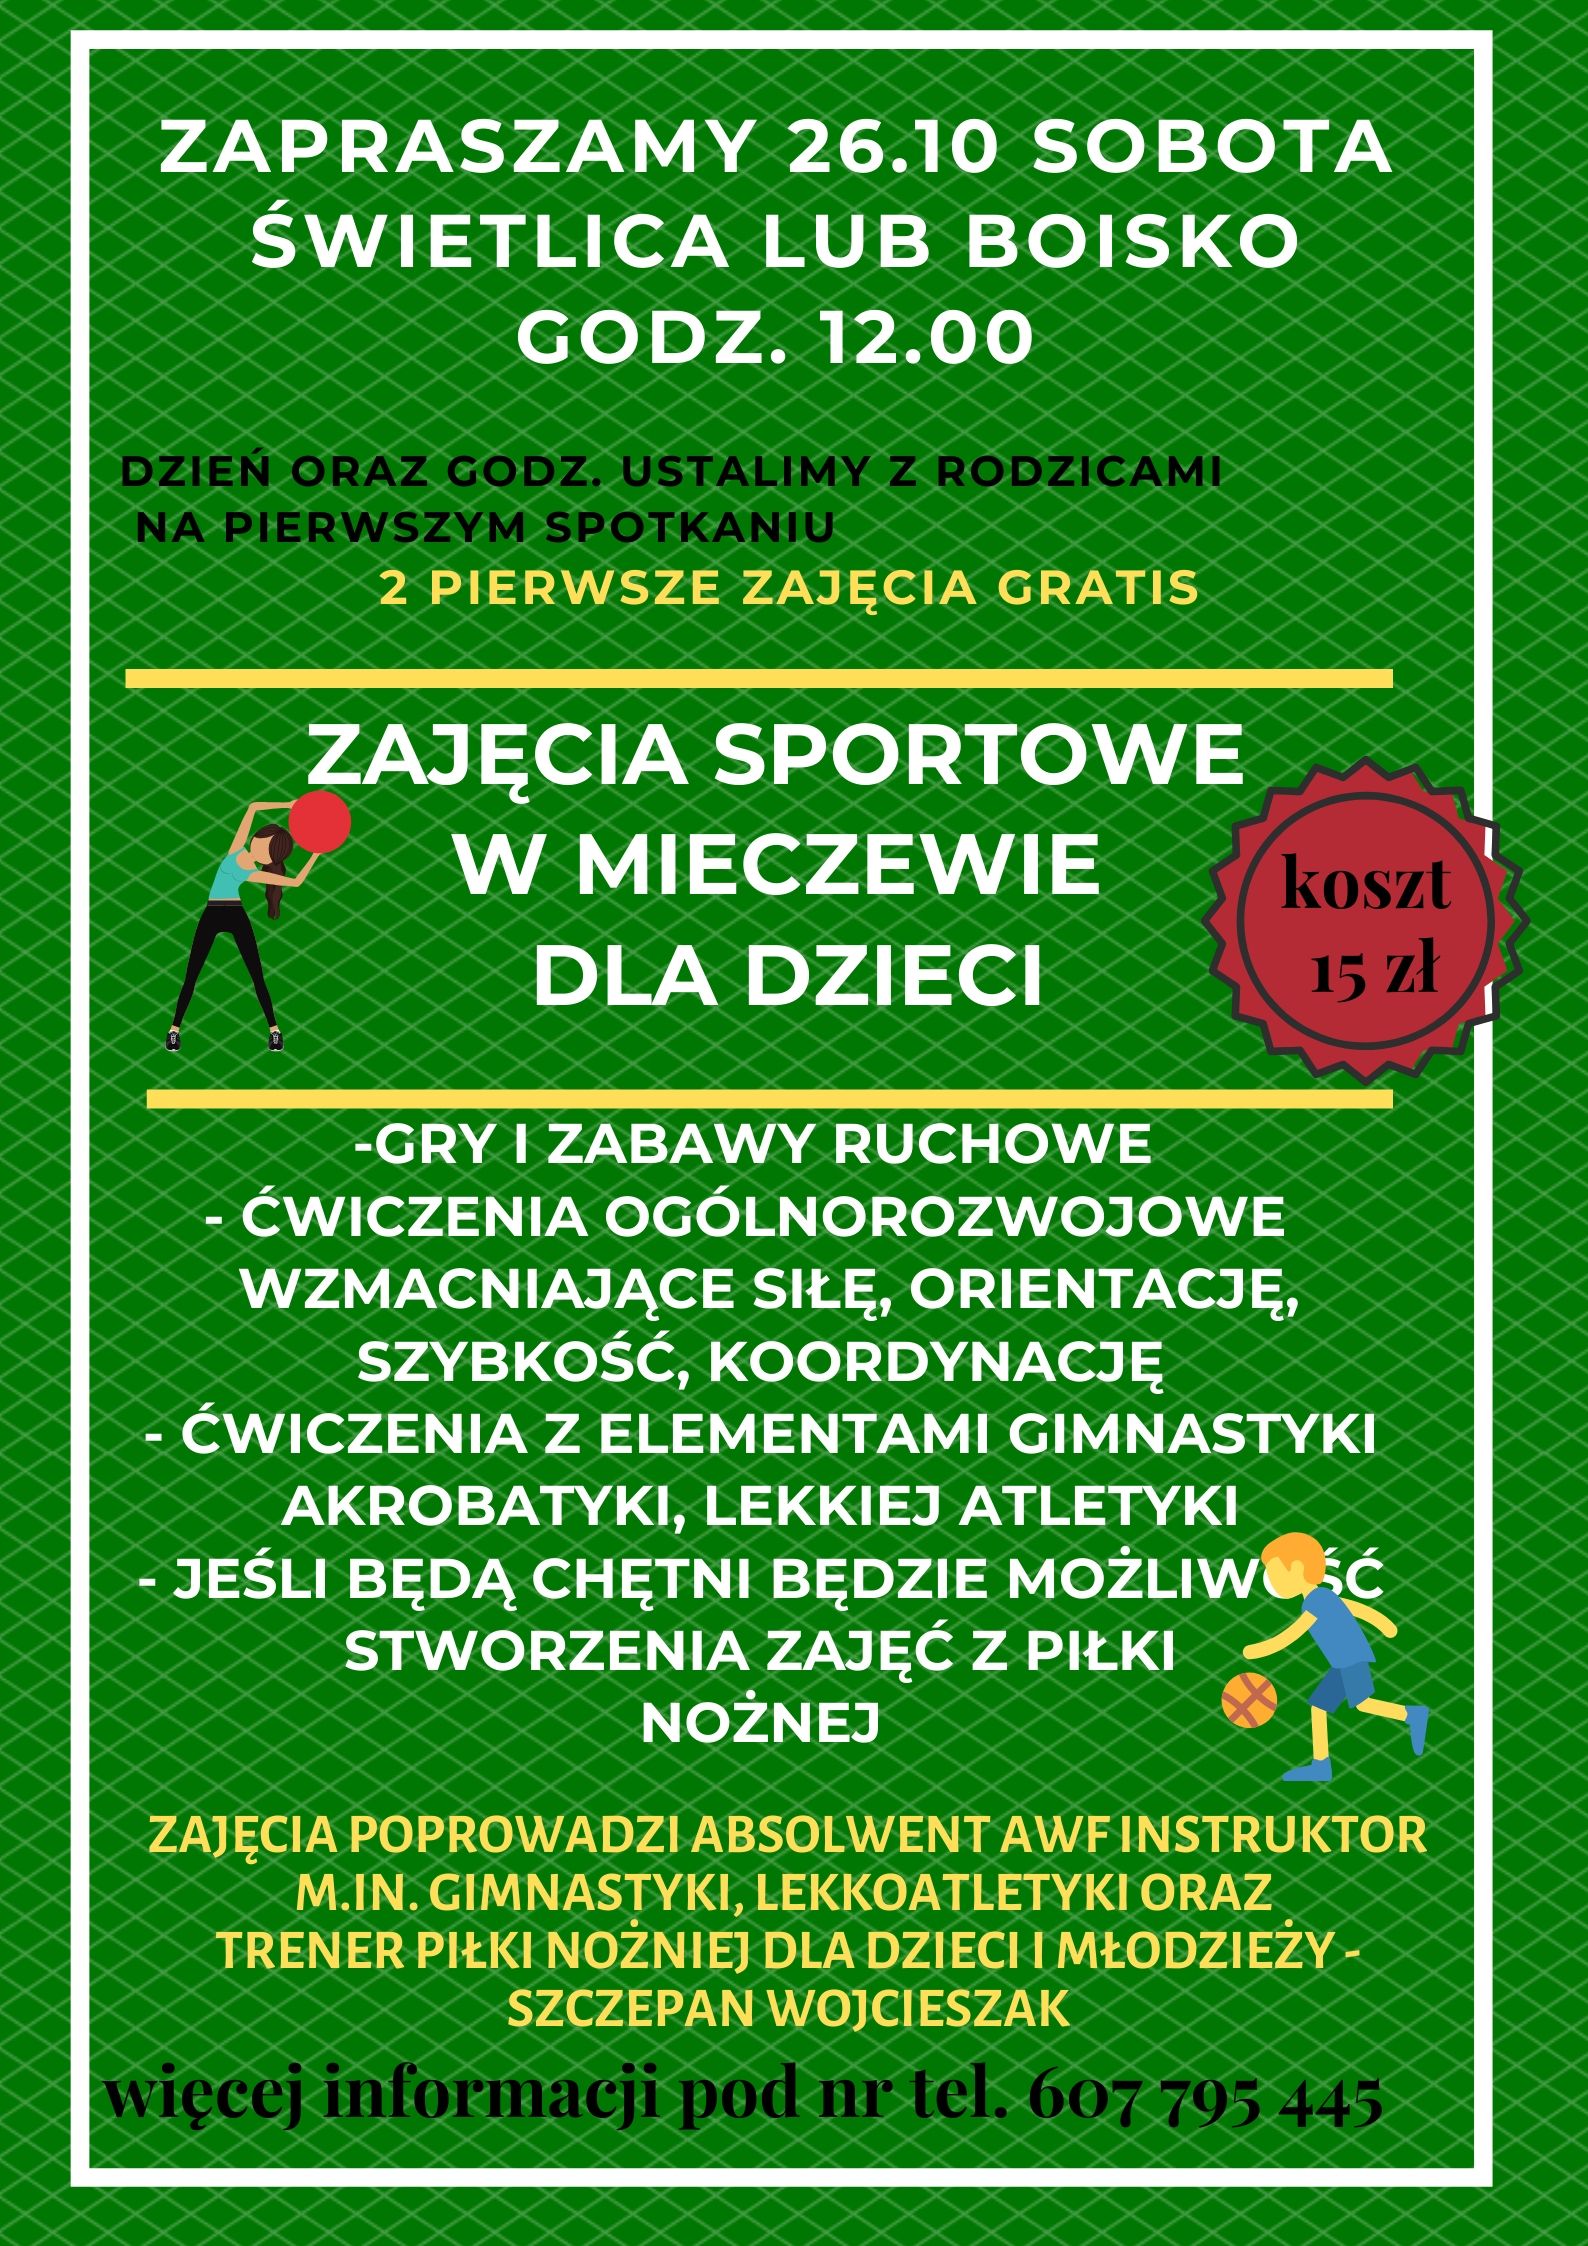 zajęcia sportowe dla dzieci od 26.10 w Mieczewie